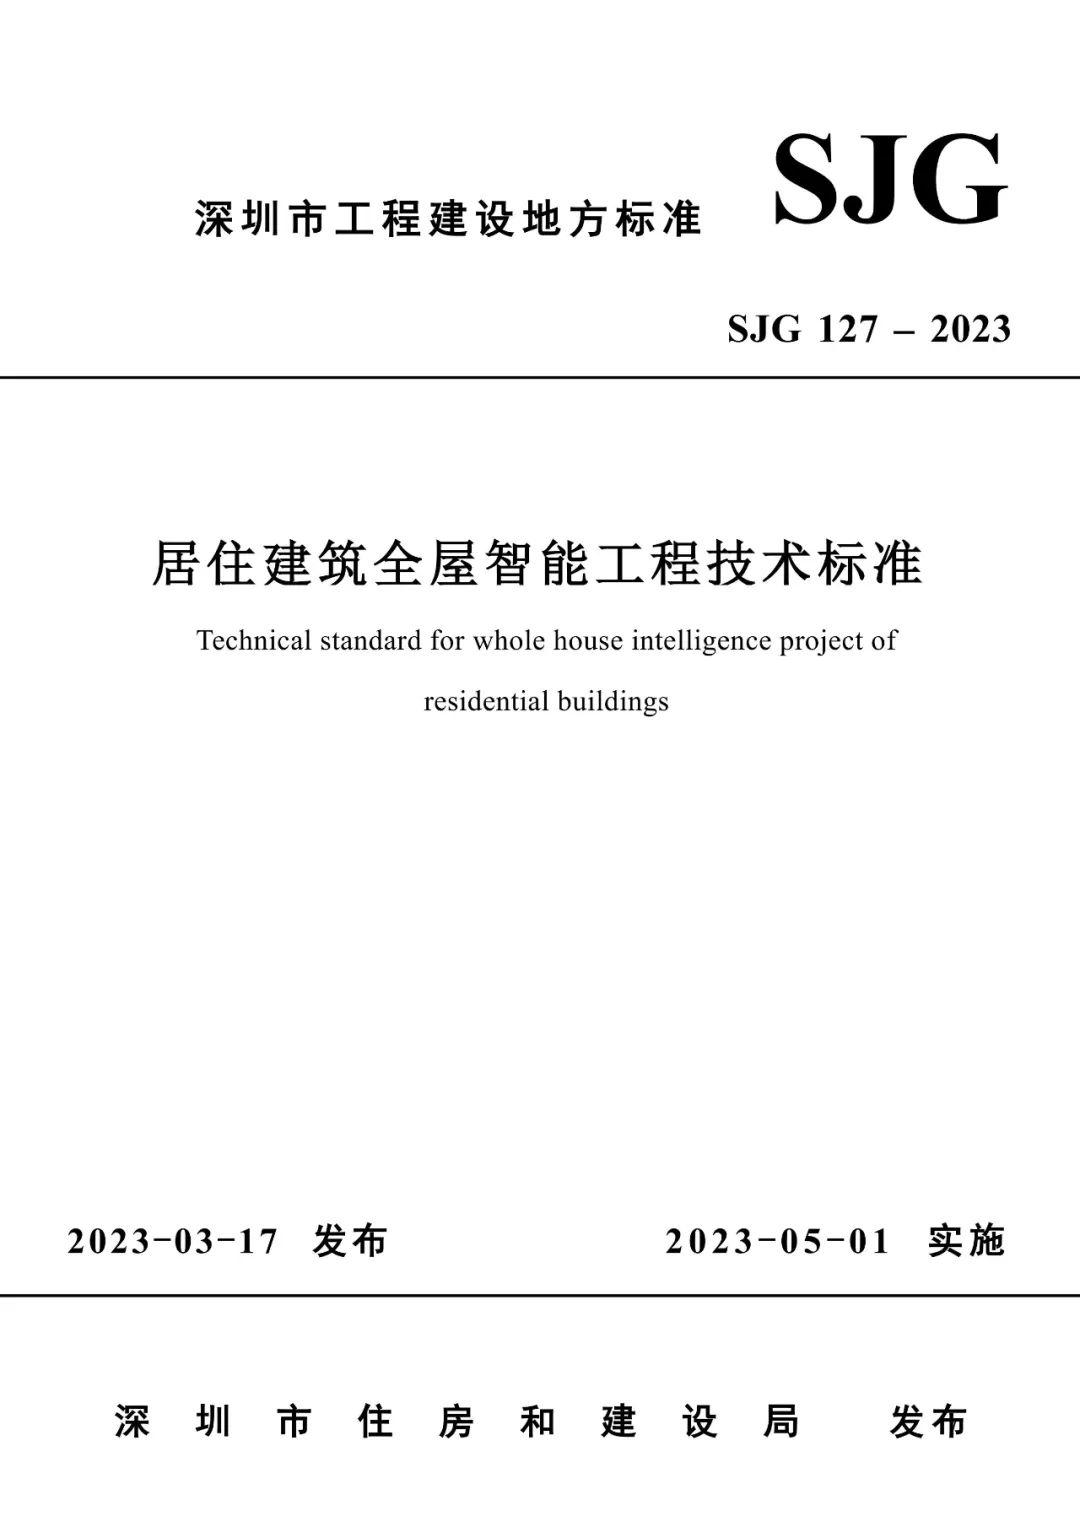 深圳市住建局关于发布《居住建筑全屋智能工程技术标准》的通知